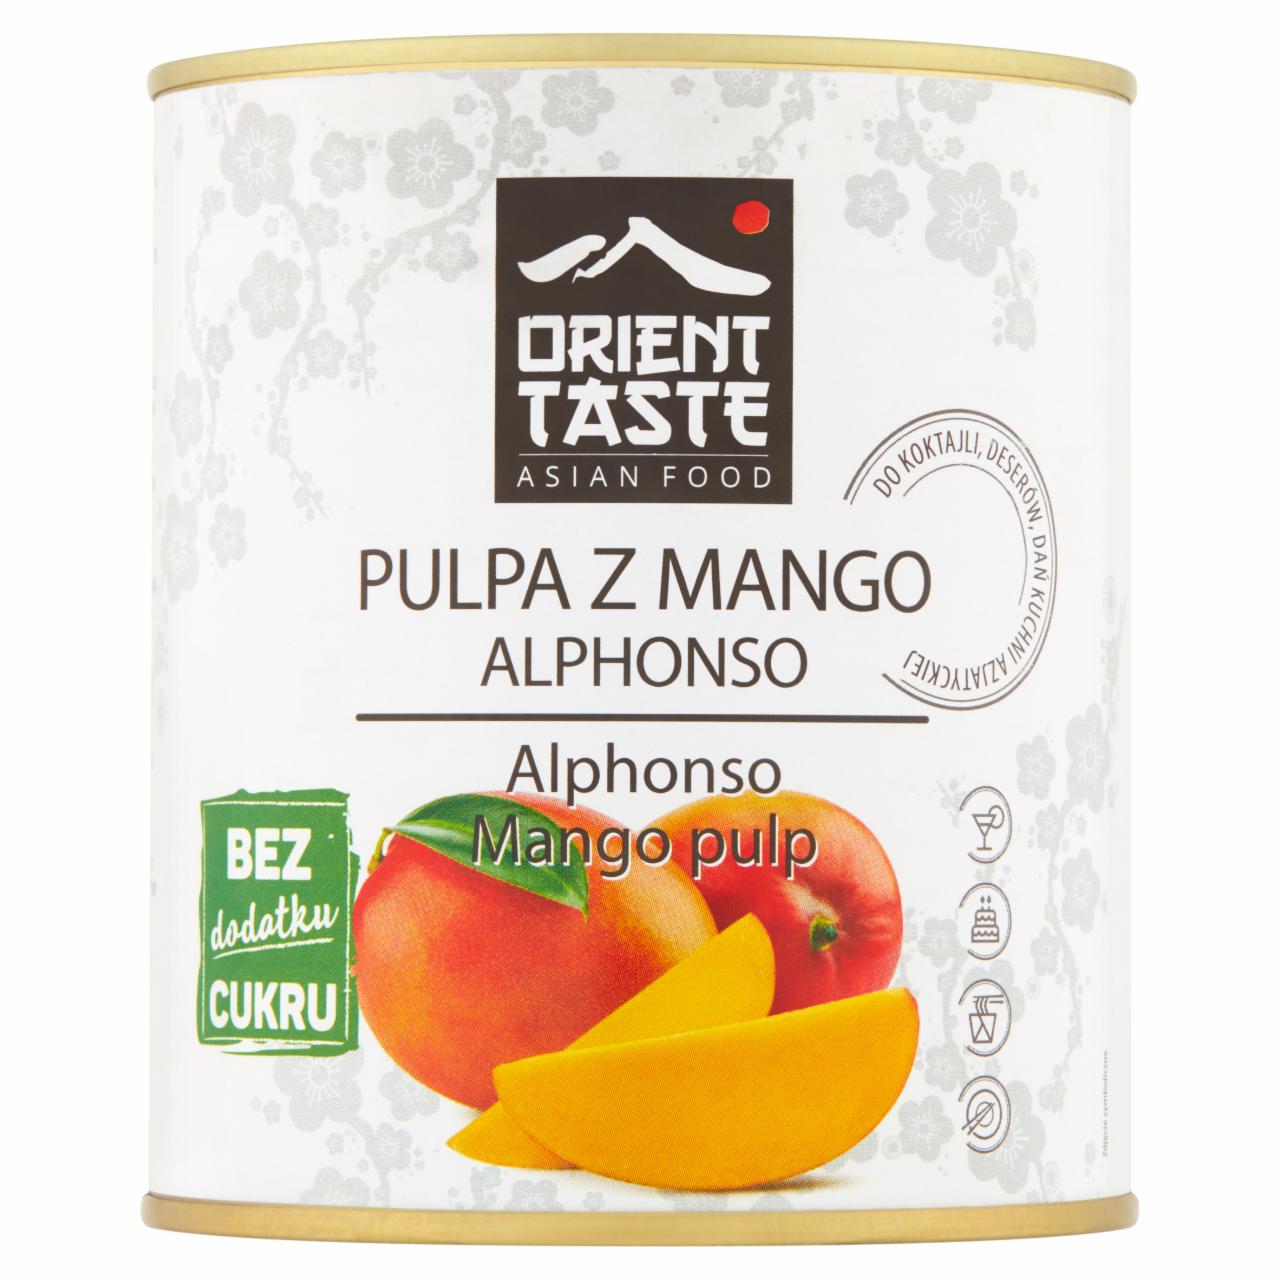 Zdjęcia - Orient Taste Pulpa z mango alphonso 850 g